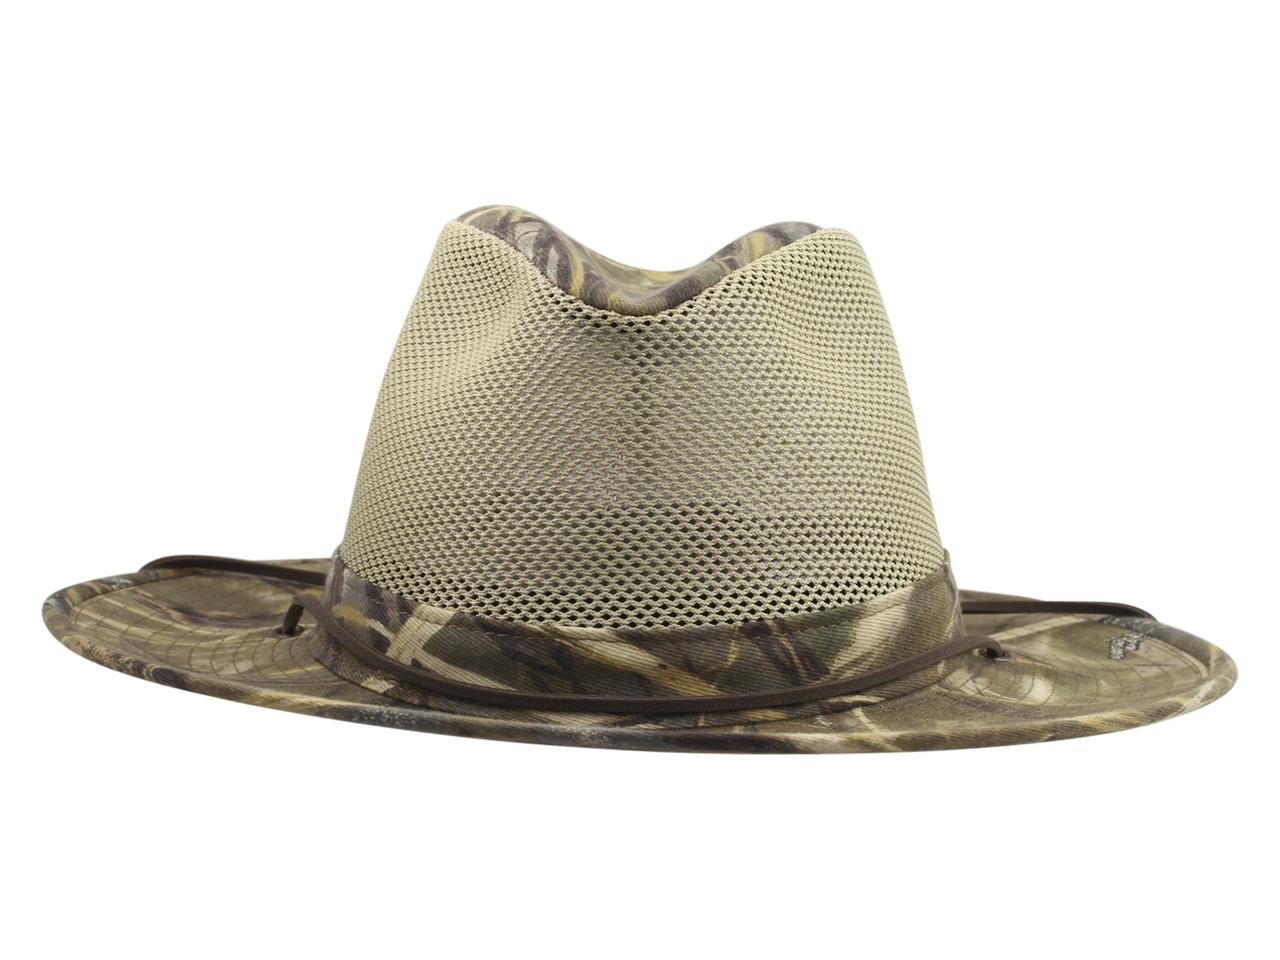 Henschel Men's Packable Aussie 5310 Breezer Safari Hat